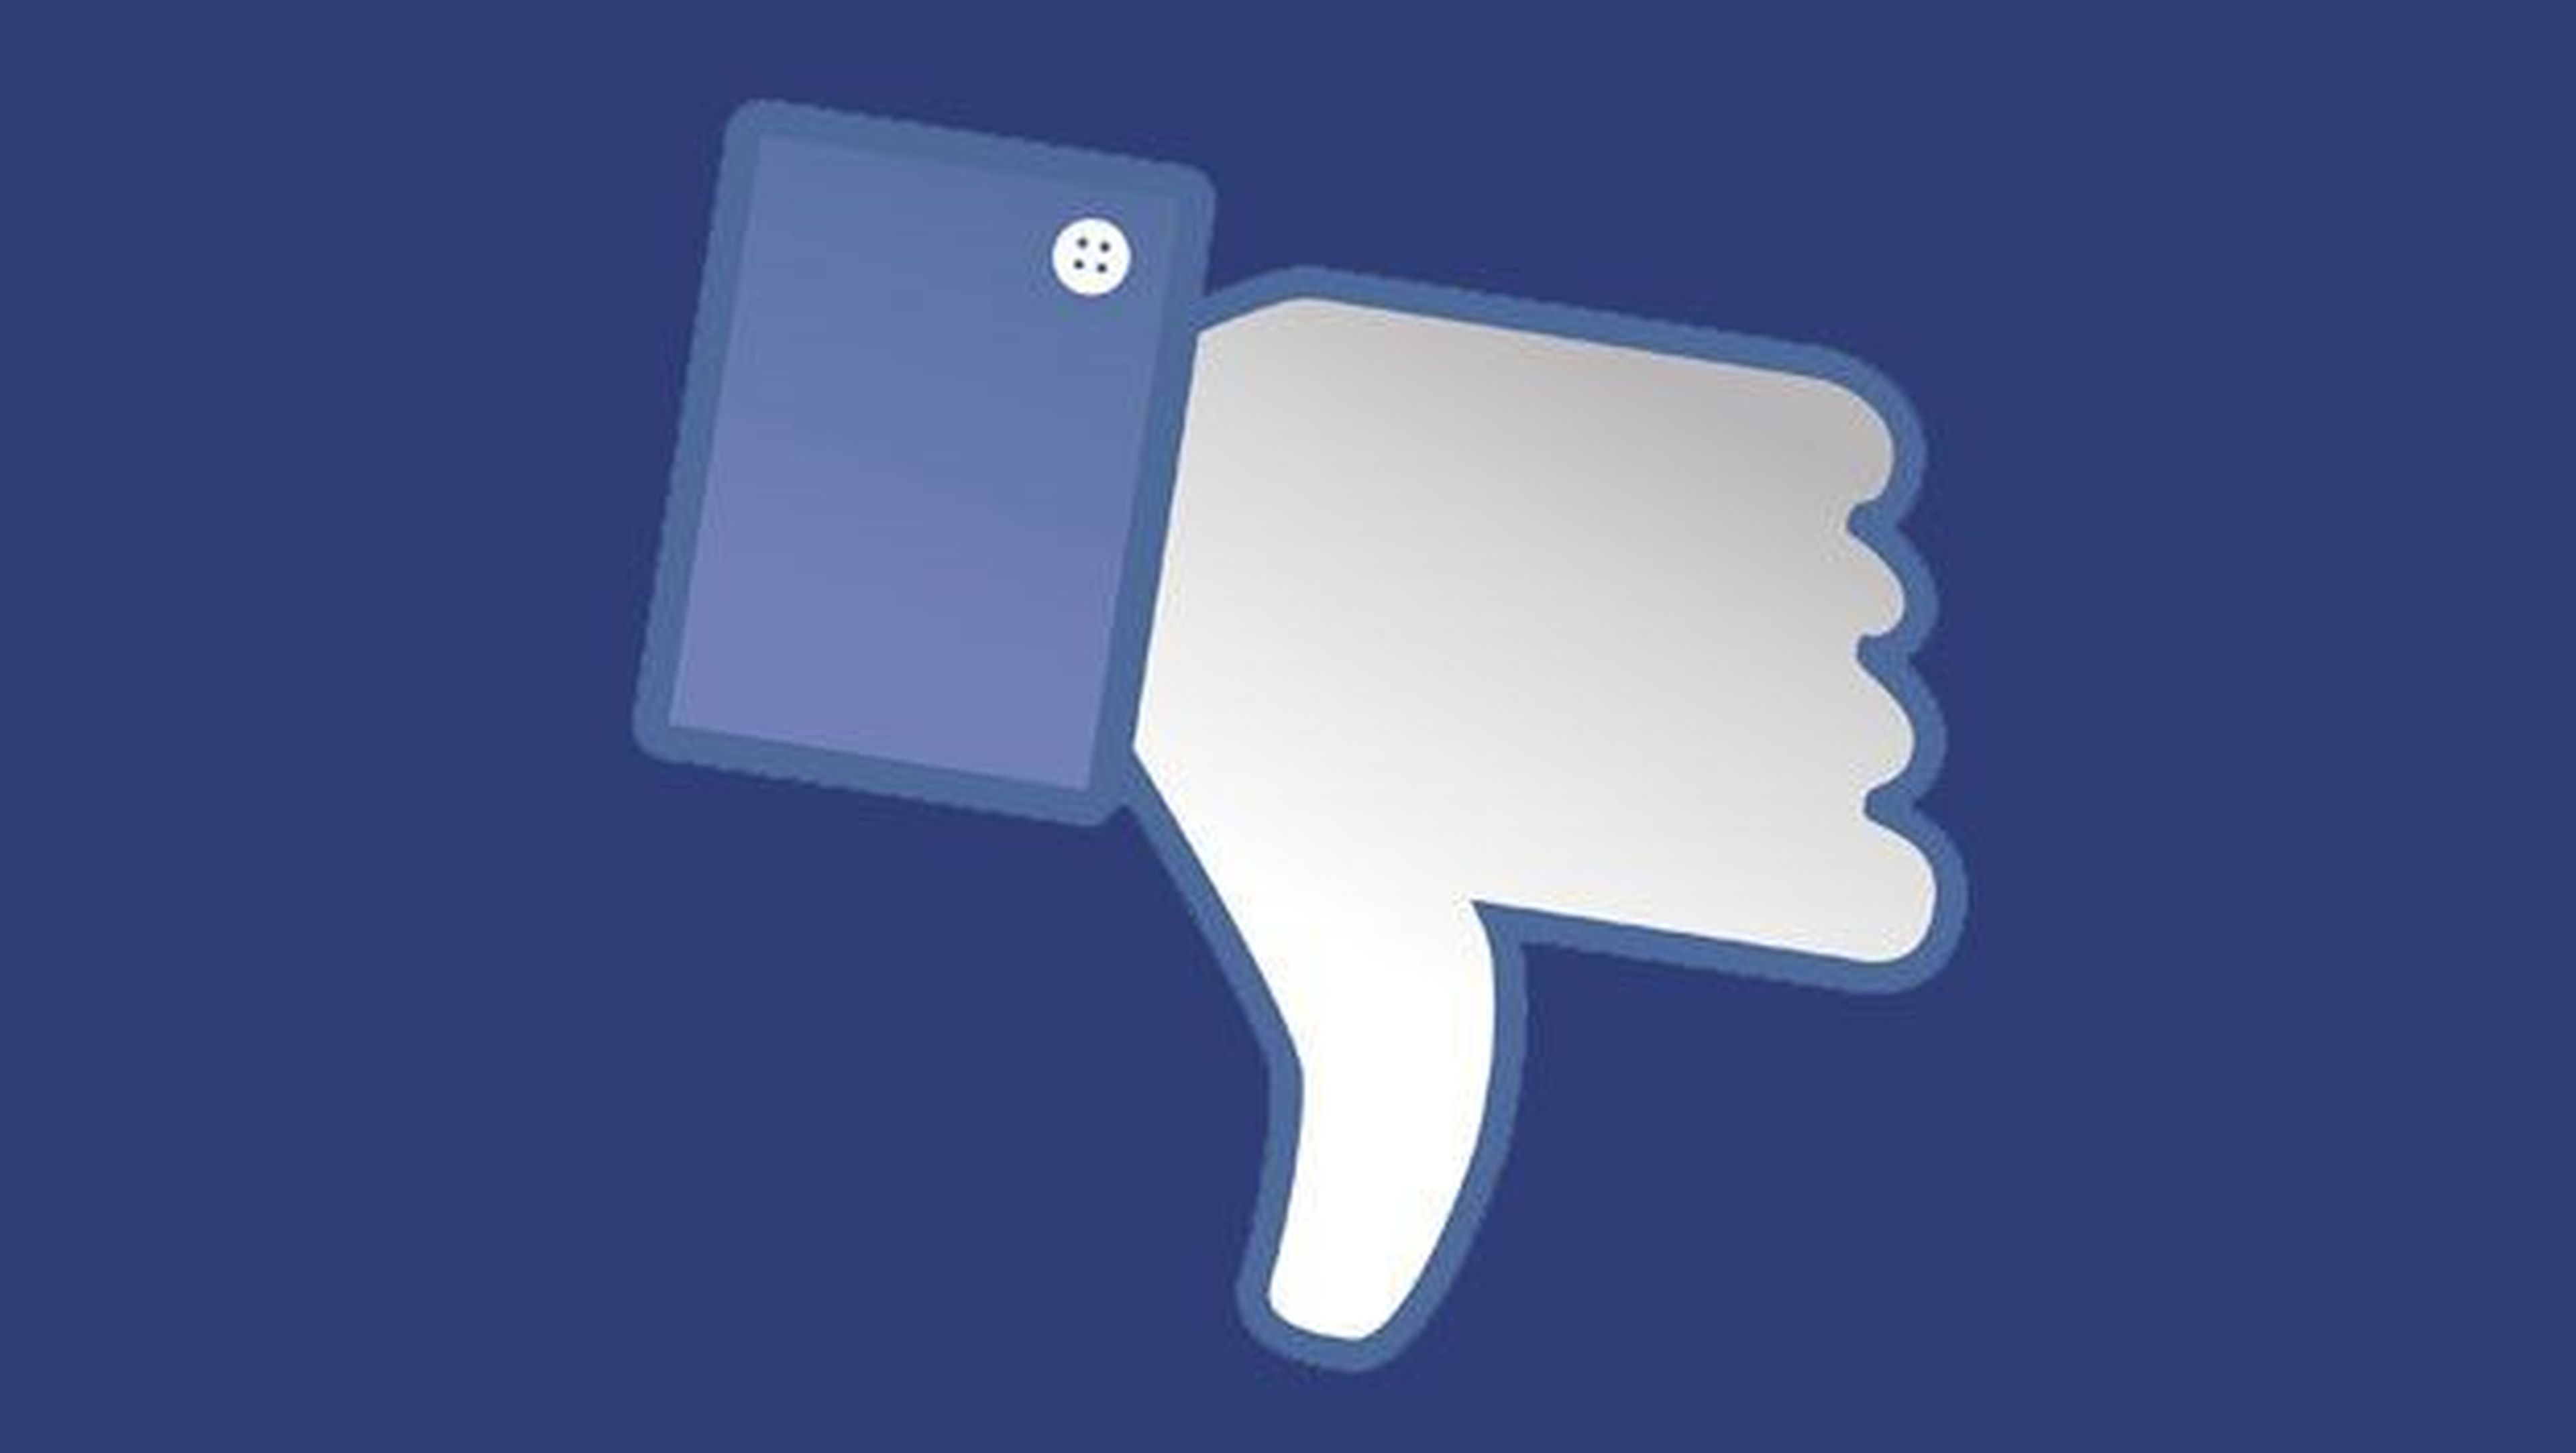 borrar apps de facebook